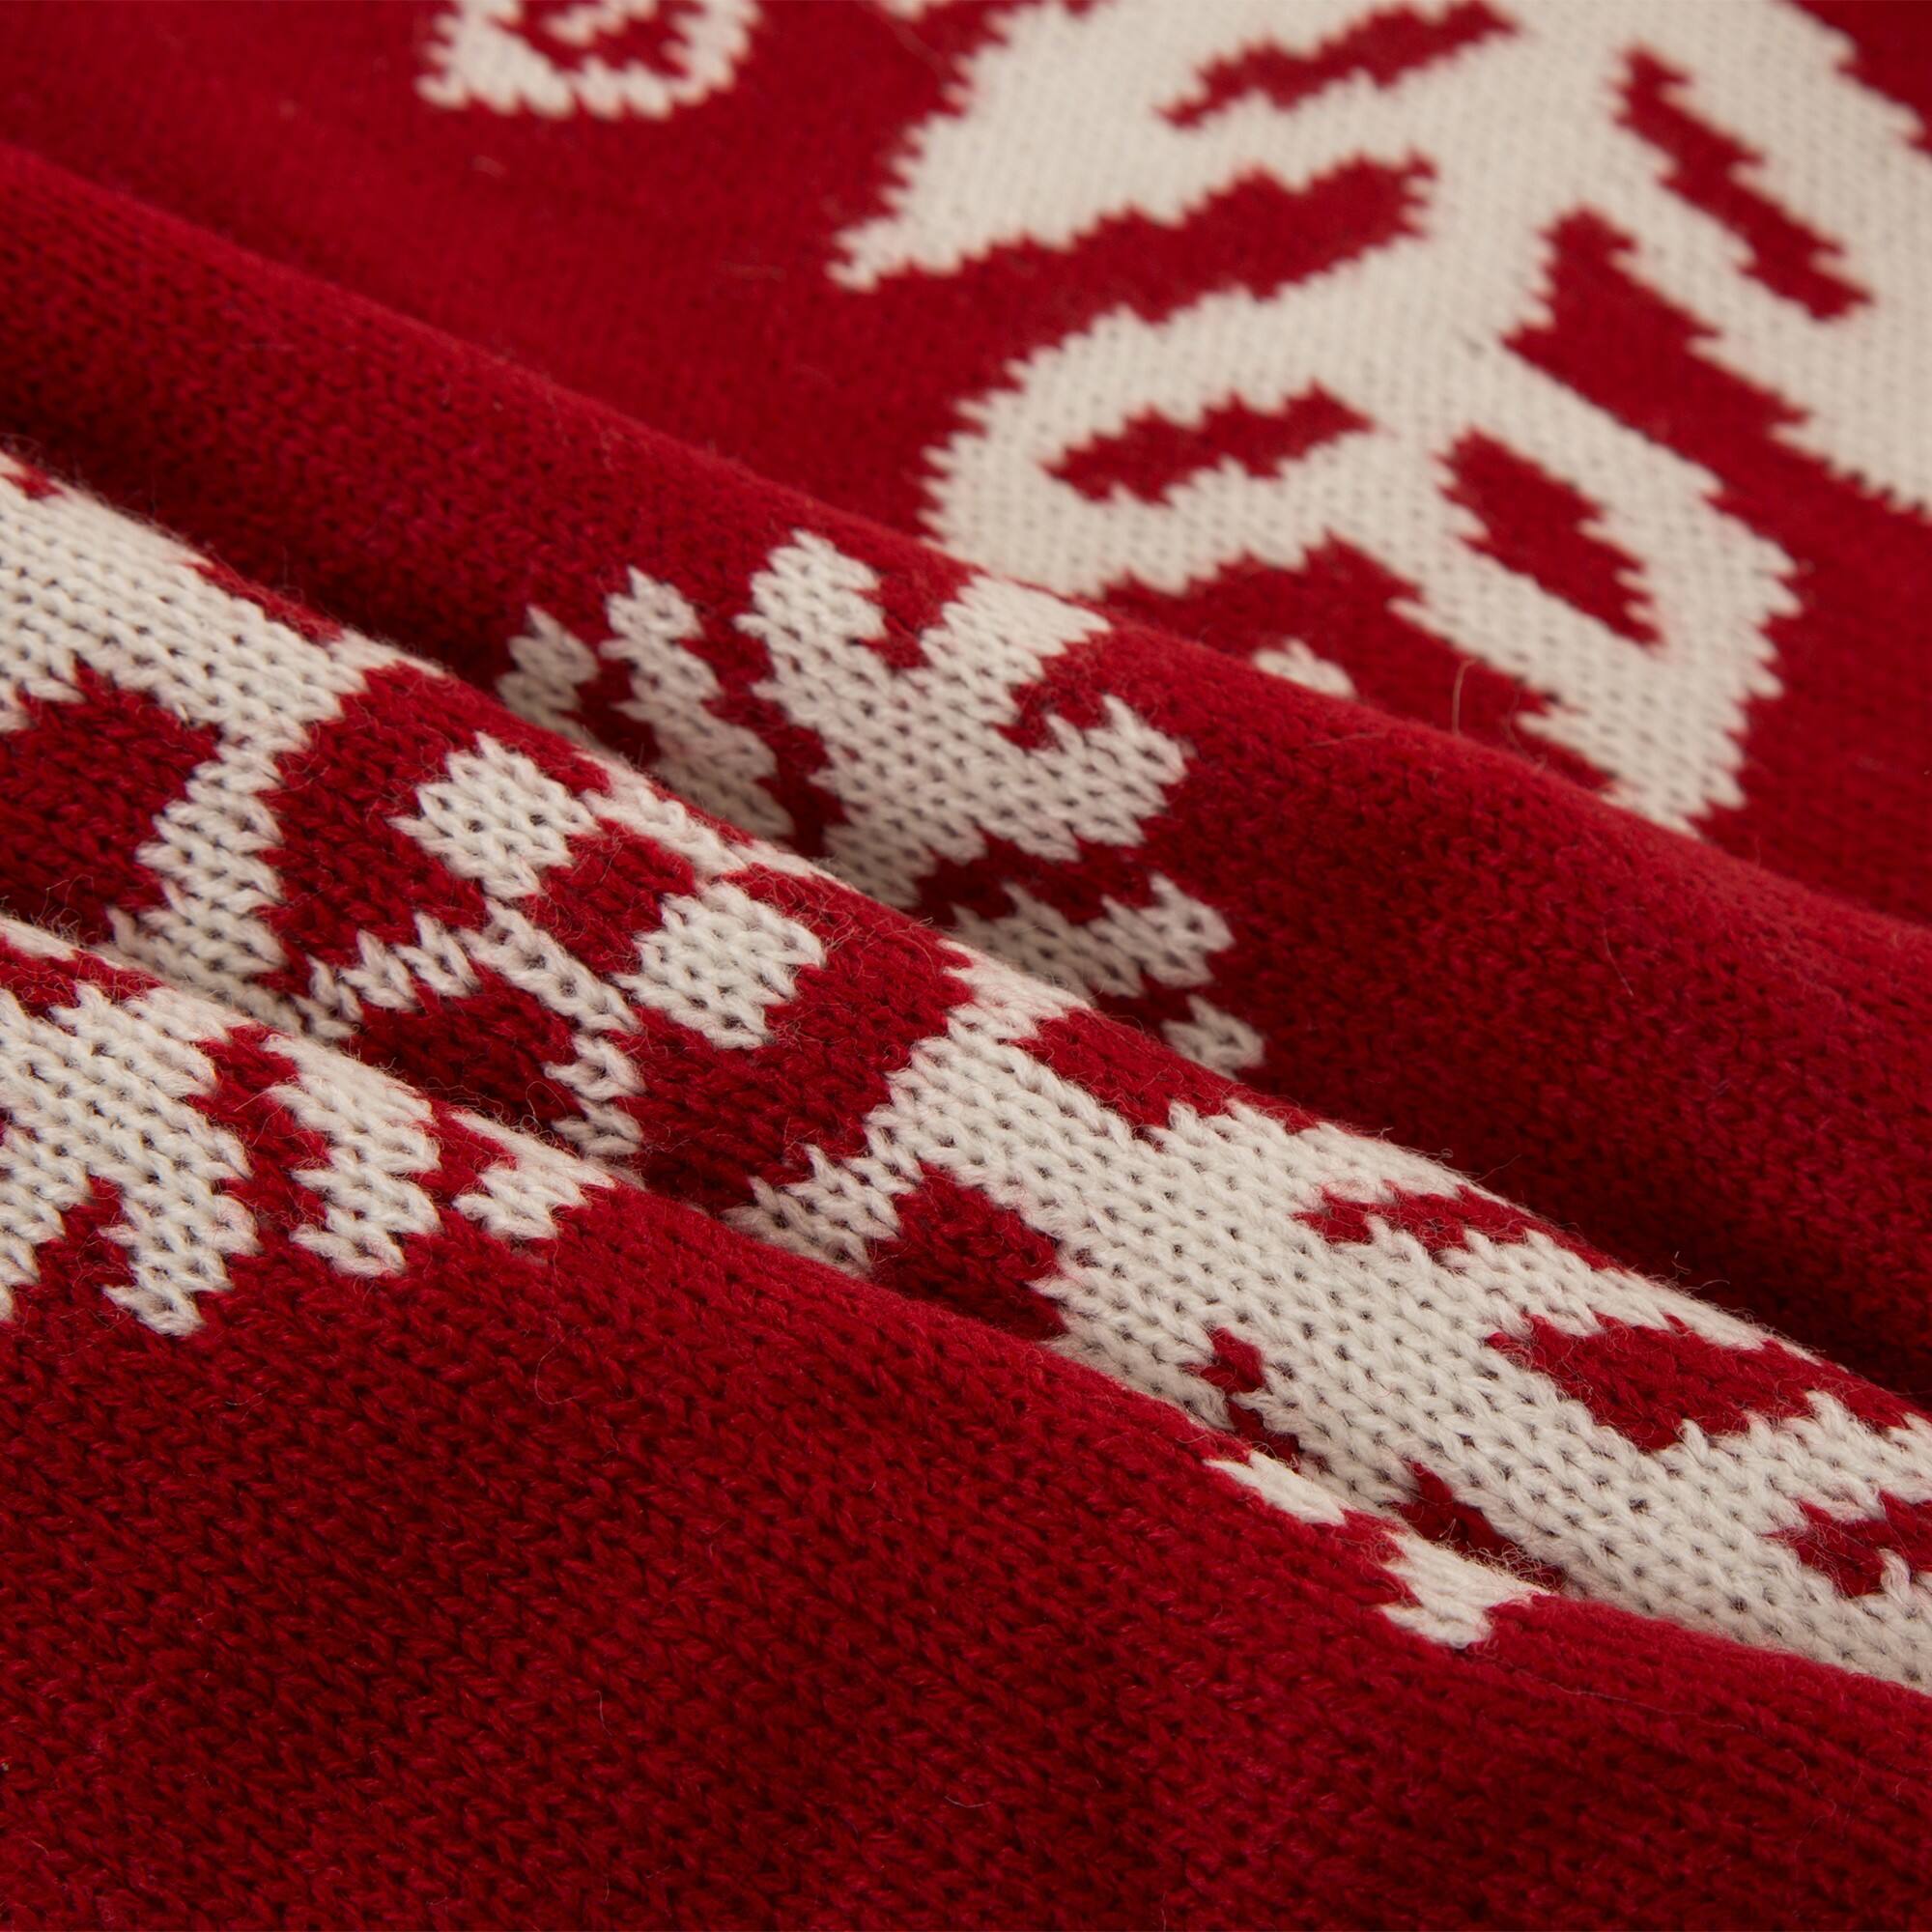 Glitzhome&#xAE; Red Snowflake Tree Skirt &#x26; Stockings Set